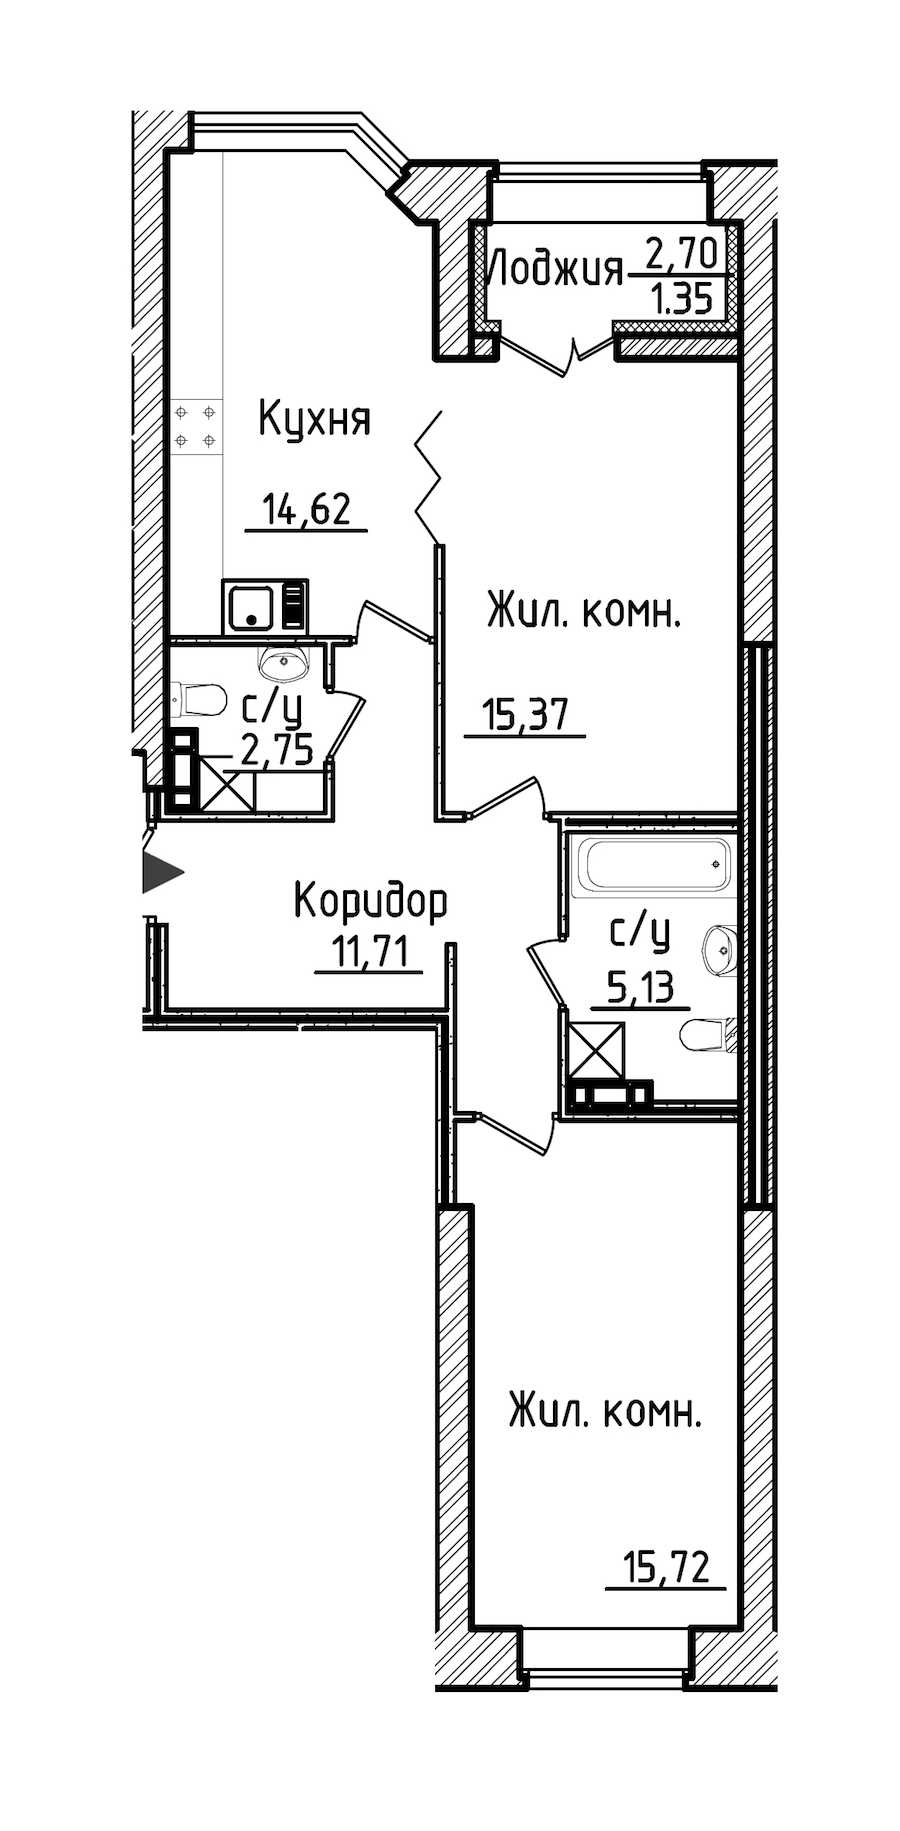 Двухкомнатная квартира в Строительный трест: площадь 66.65 м2 , этаж: 3 – купить в Санкт-Петербурге